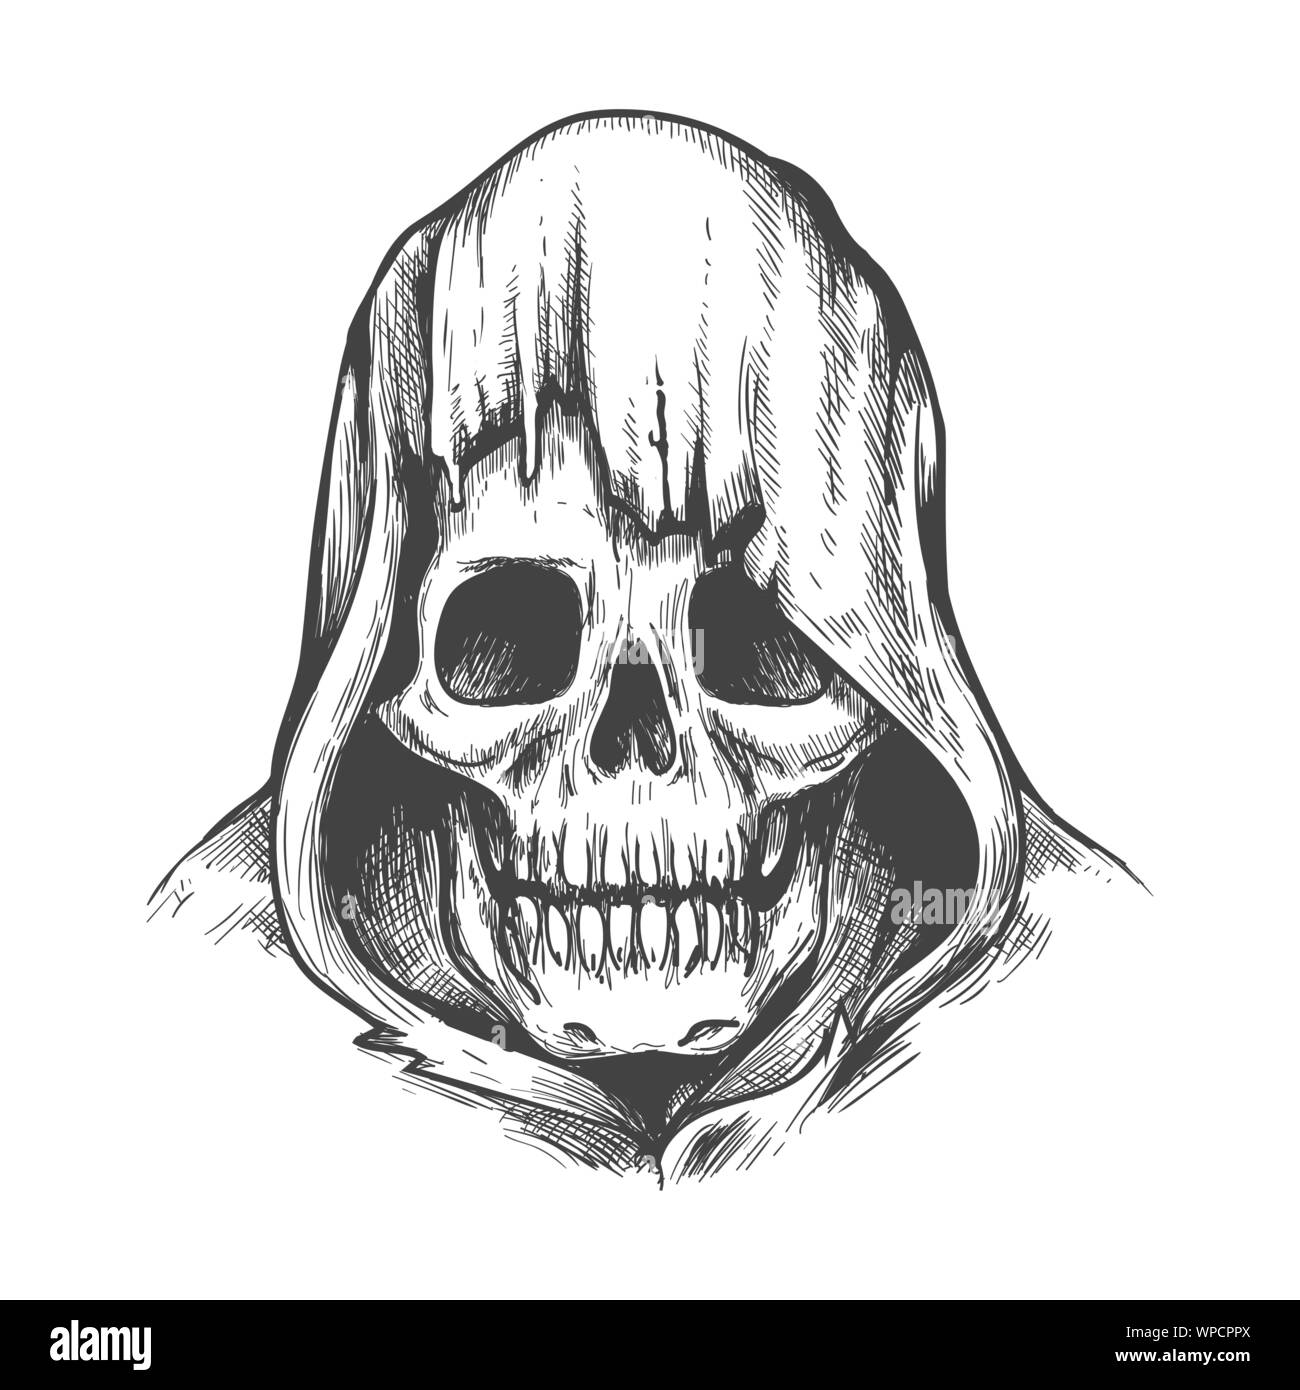 Skull Art Vector Skeleton Head Sketch Stock Vector Royalty Free  1489679324  Shutterstock